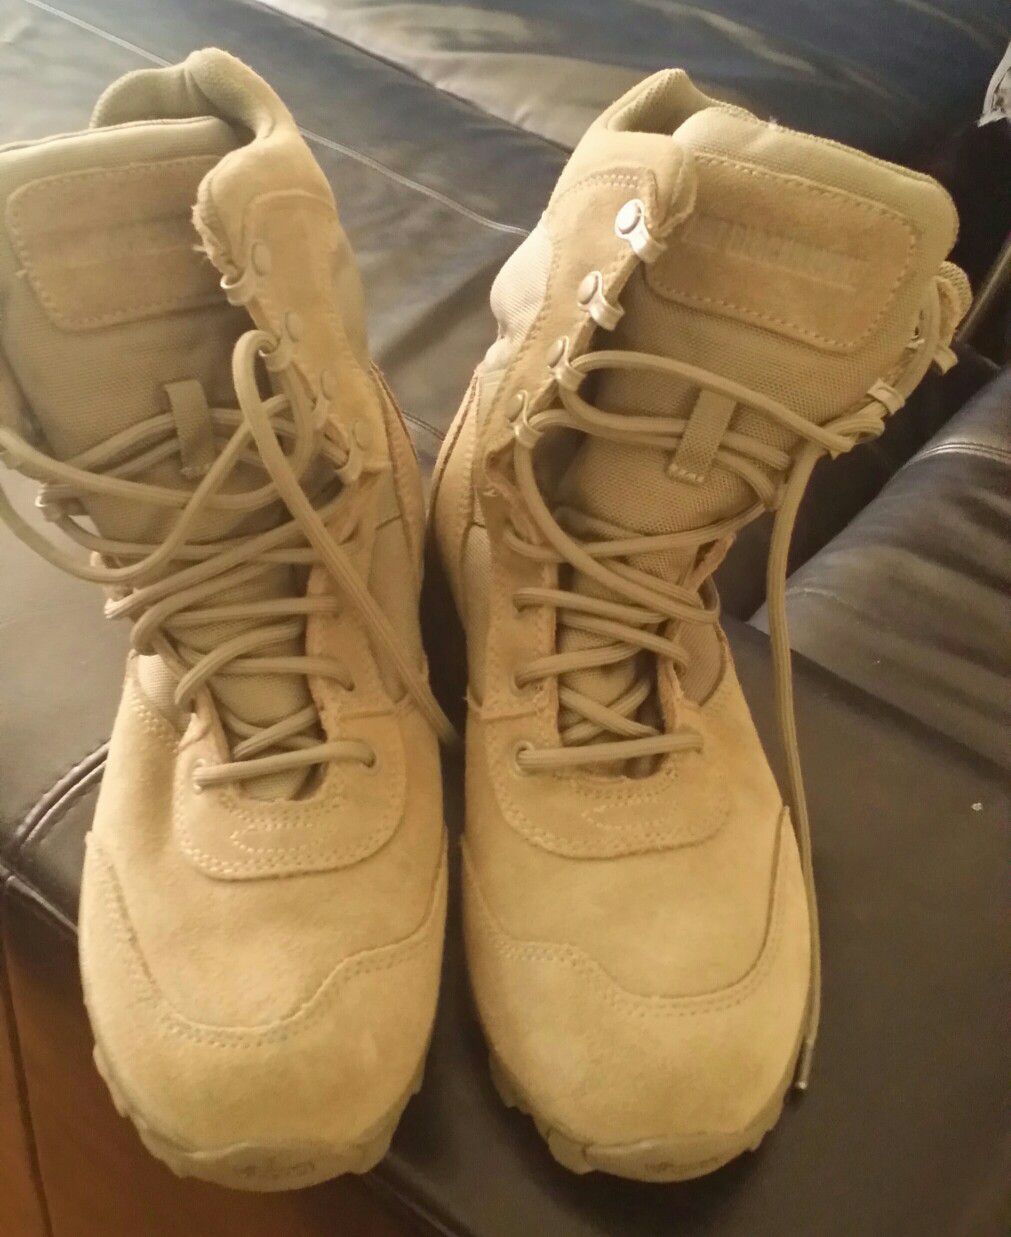 Blackhawk tactical boots